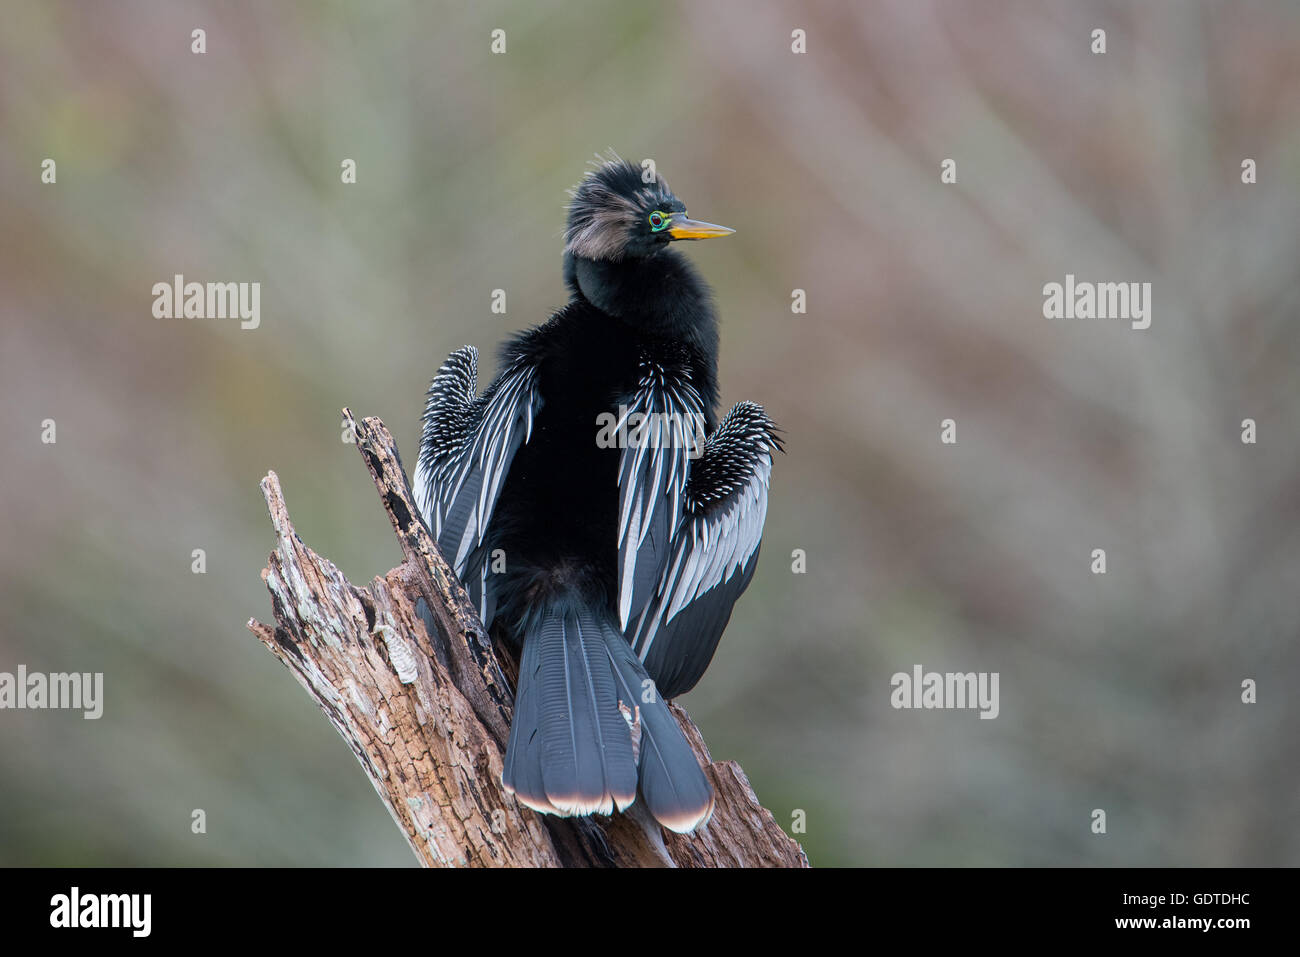 Anhinga bird perched on tree stump Stock Photo